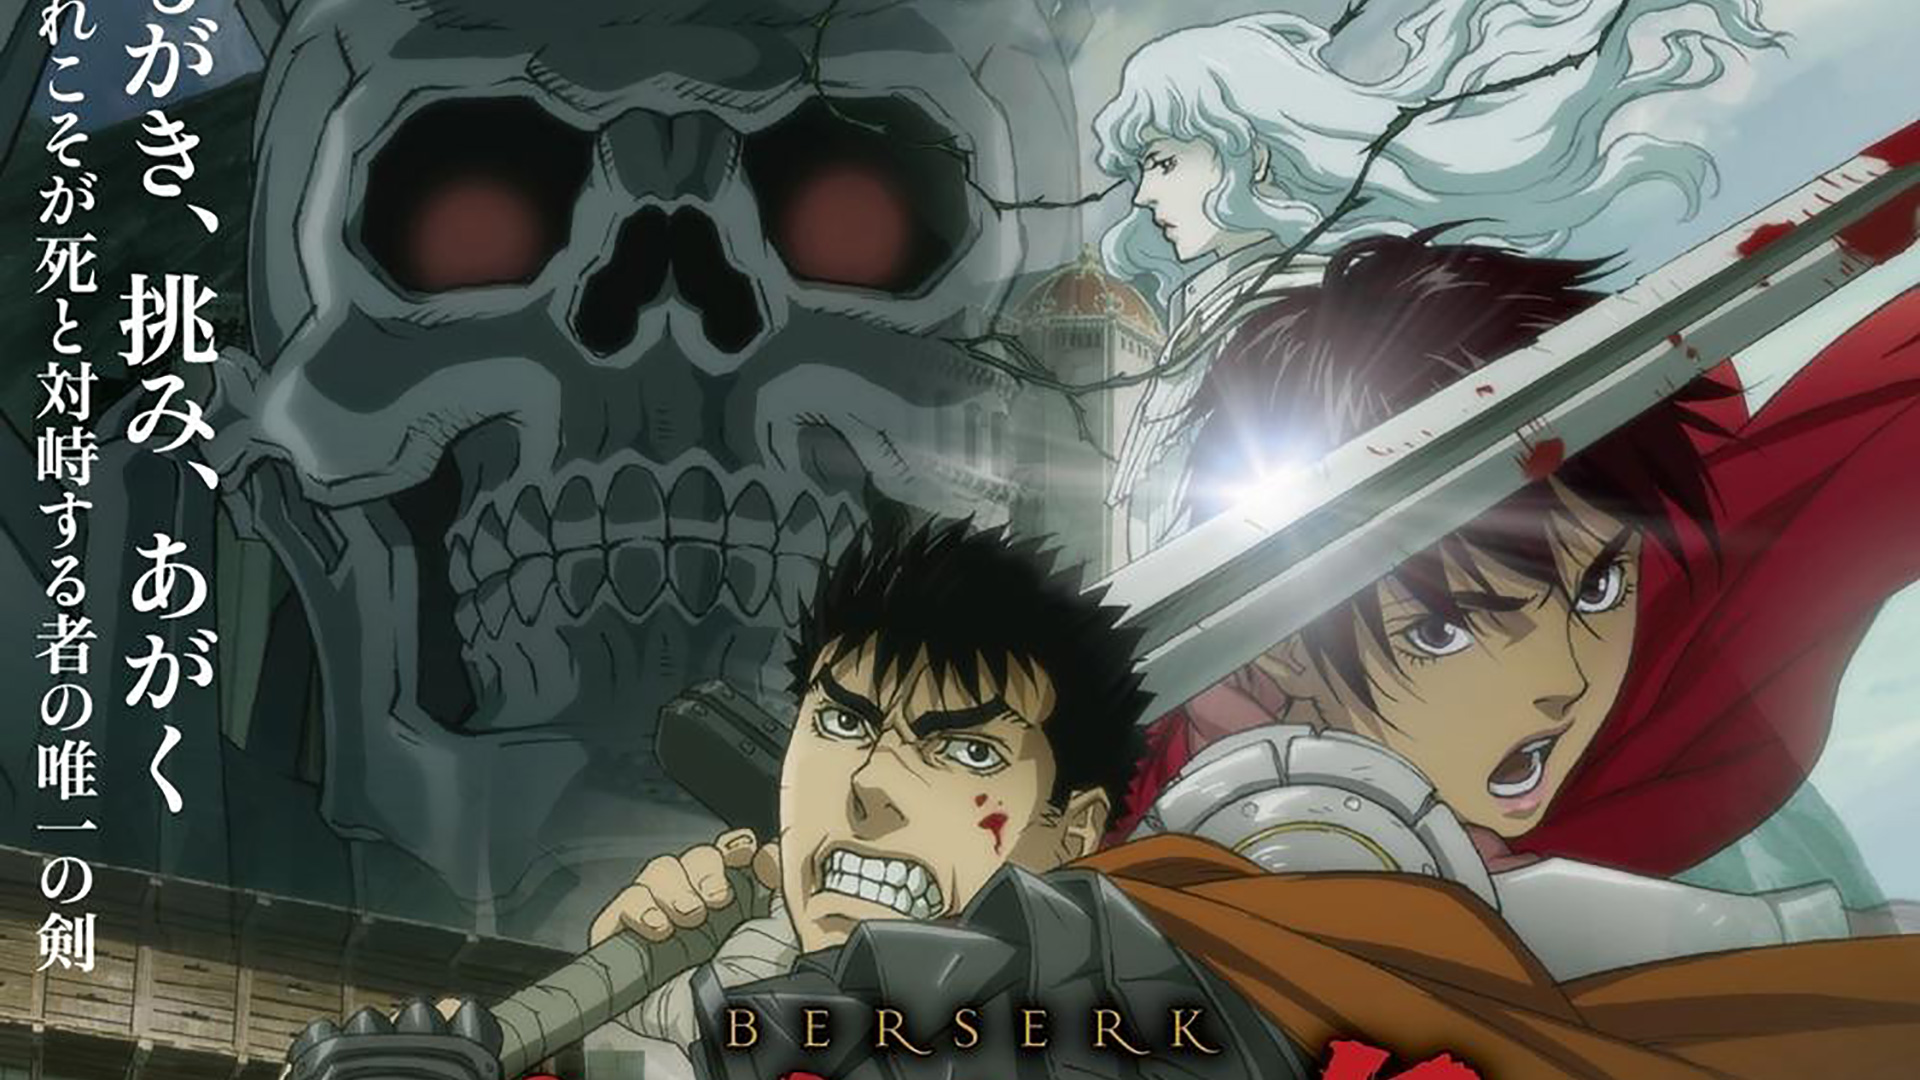 Anime Guts (Berserk) | Berserk, Berserk anime 1997, Anime-demhanvico.com.vn